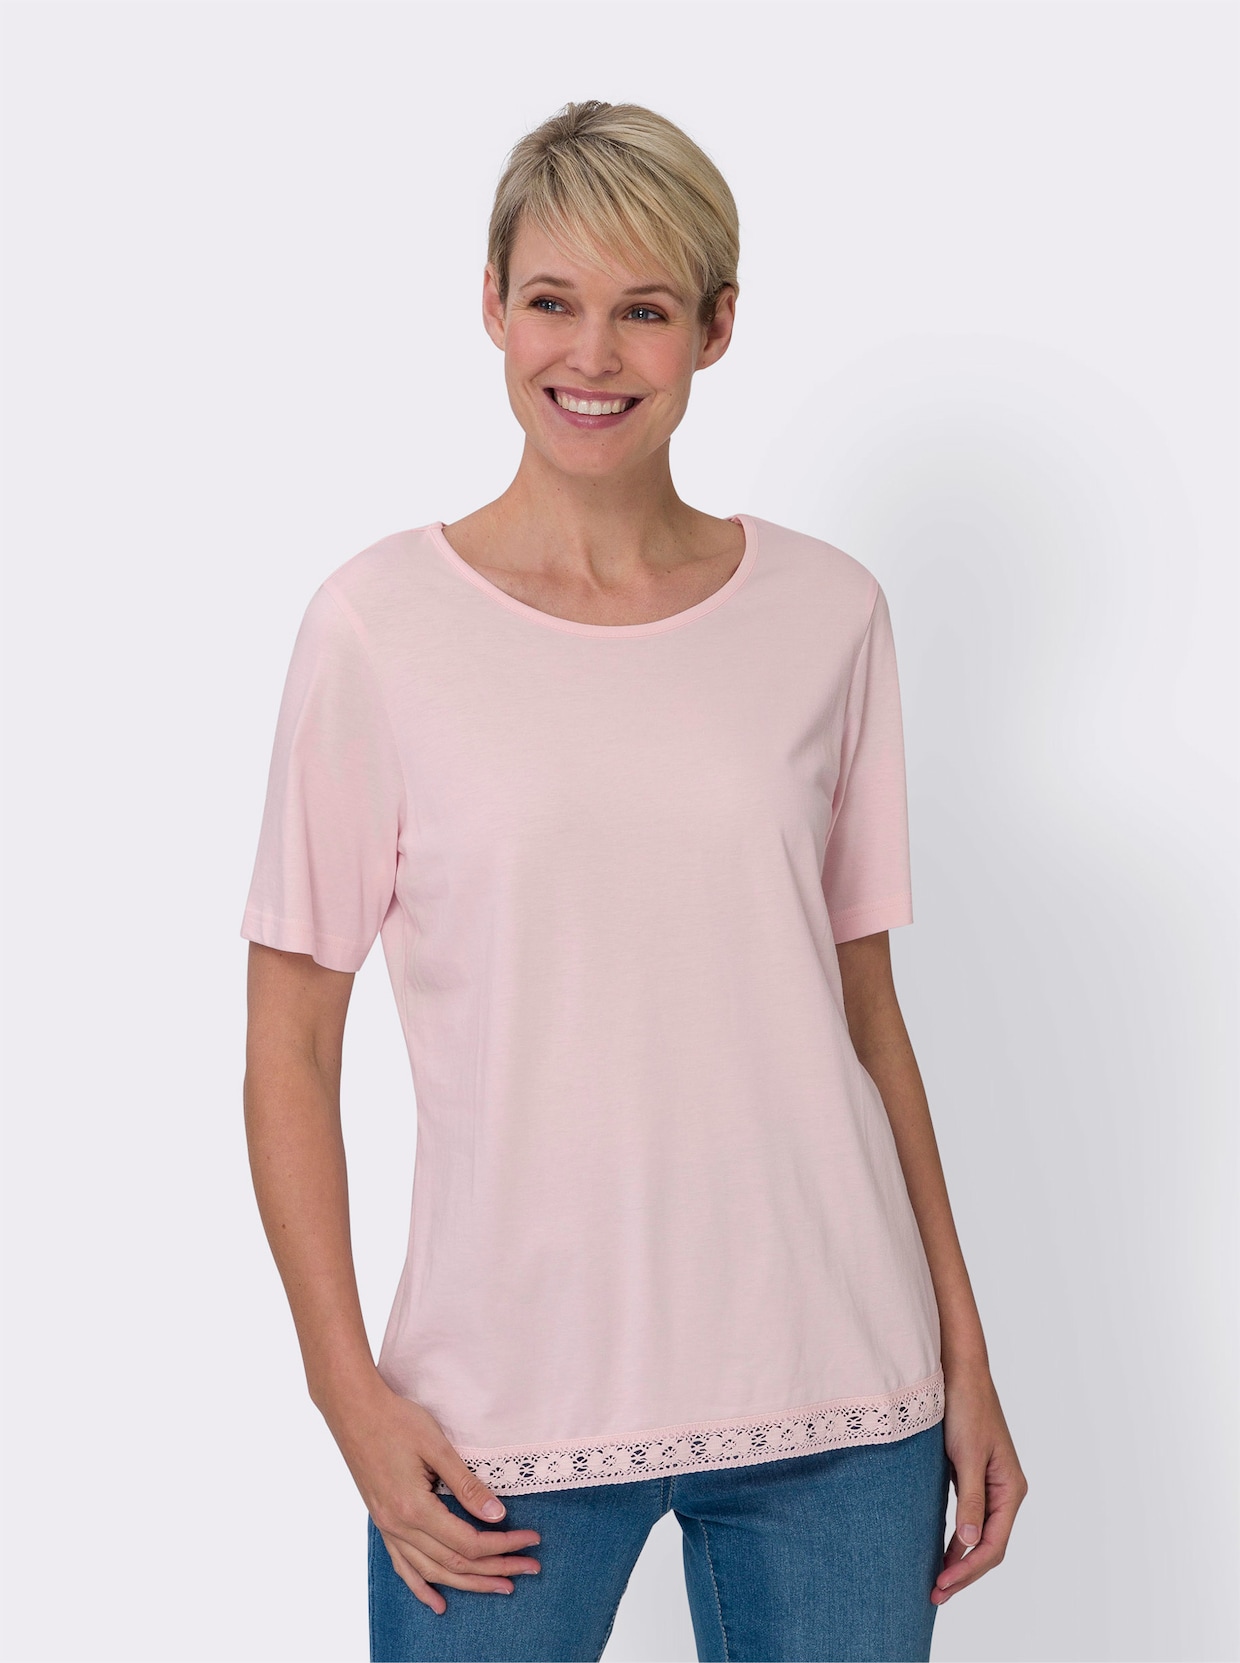 Tričko s krátkým rukávem - světle růžová